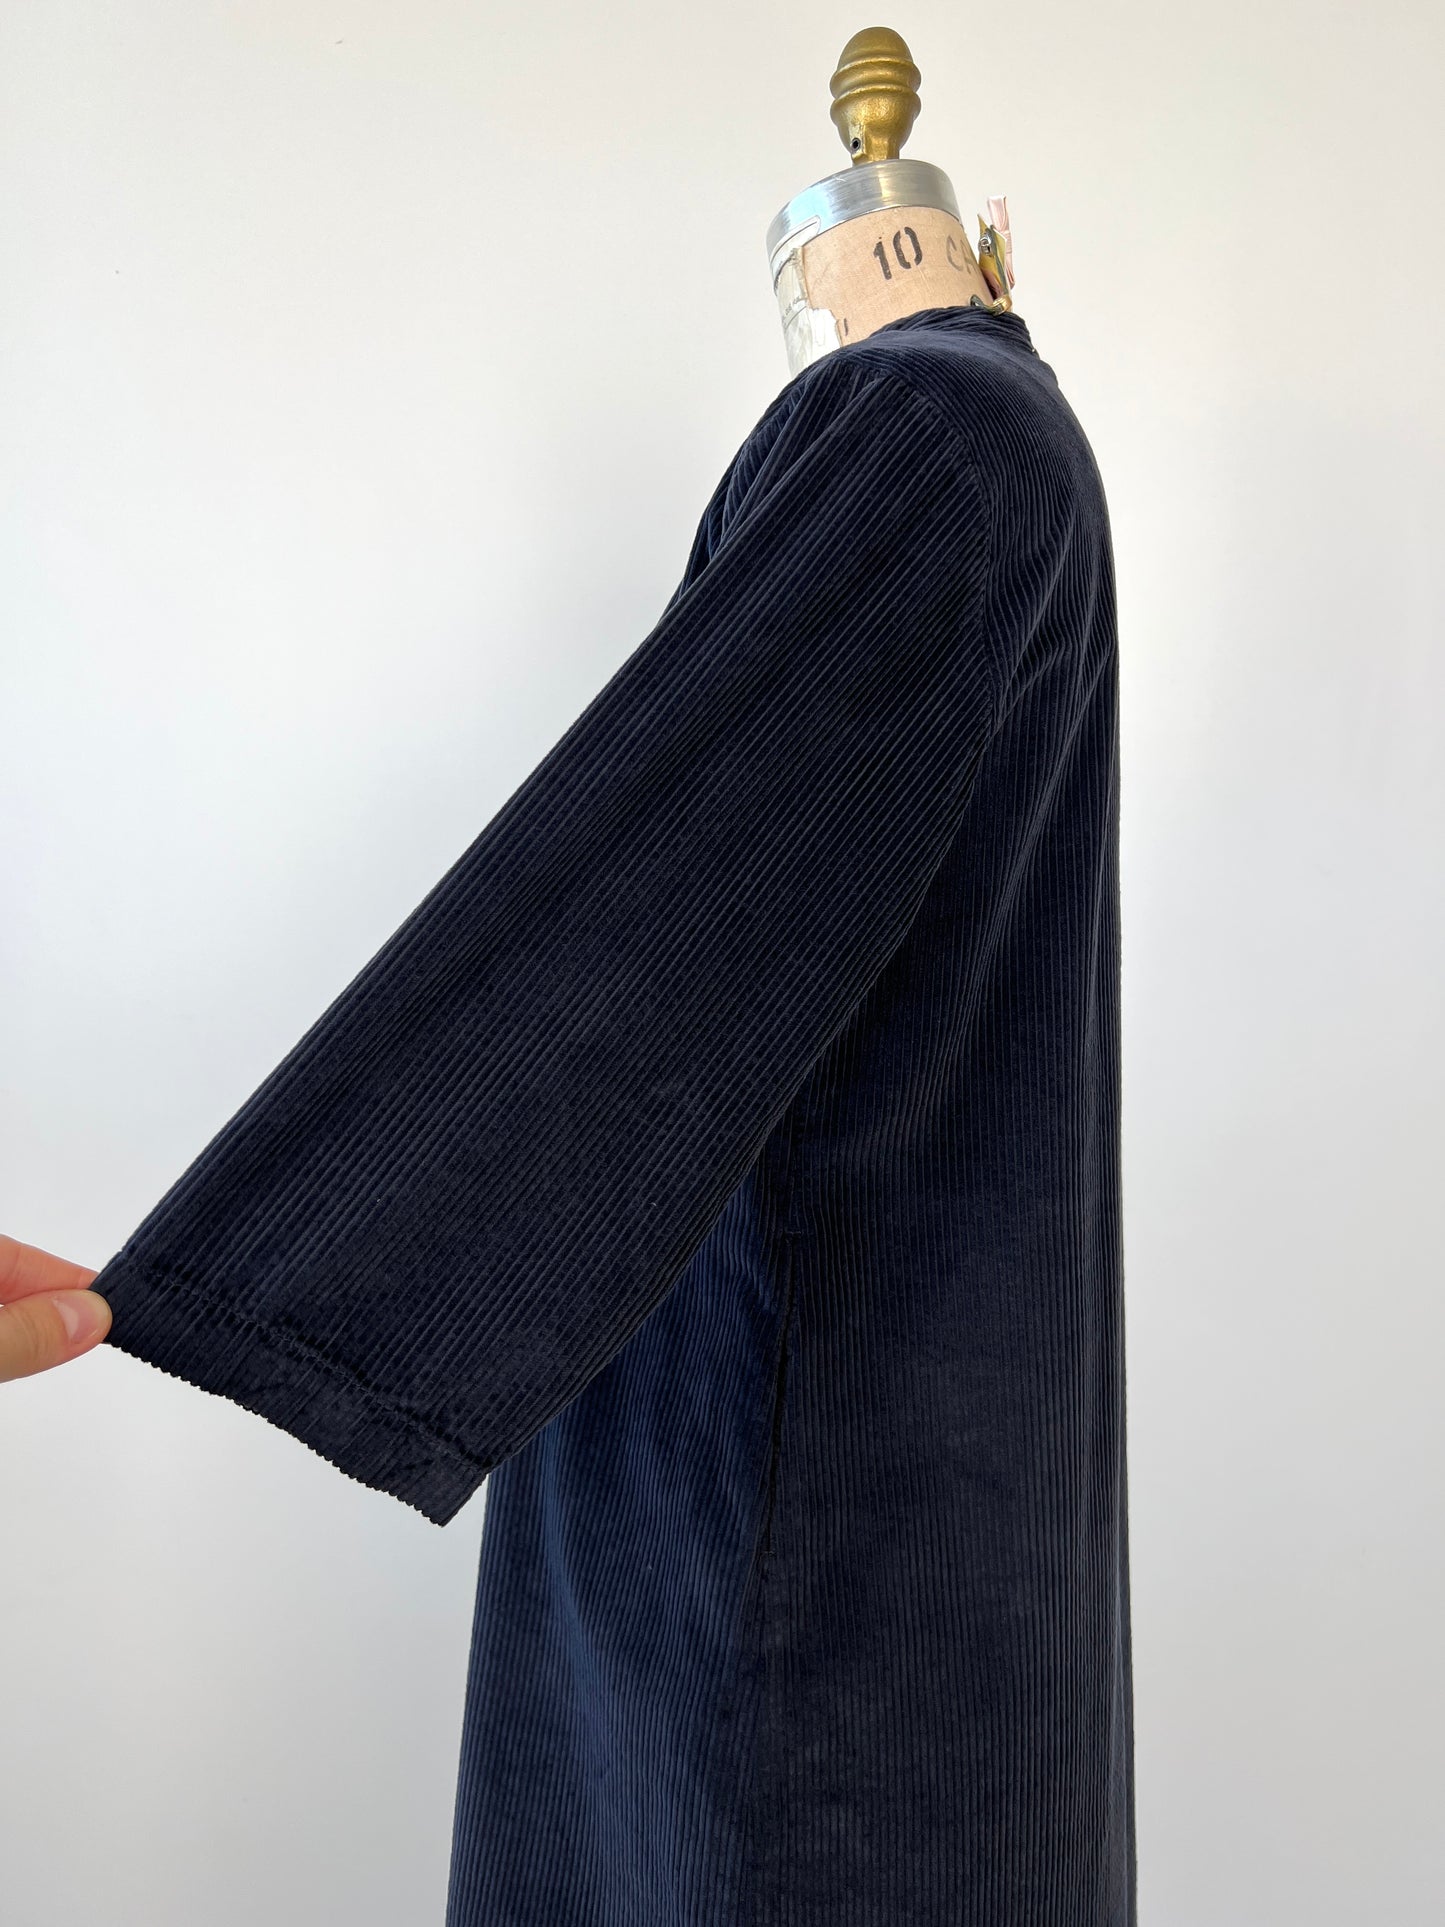 Robe tunique en velours côtelé bleu nuit (6)